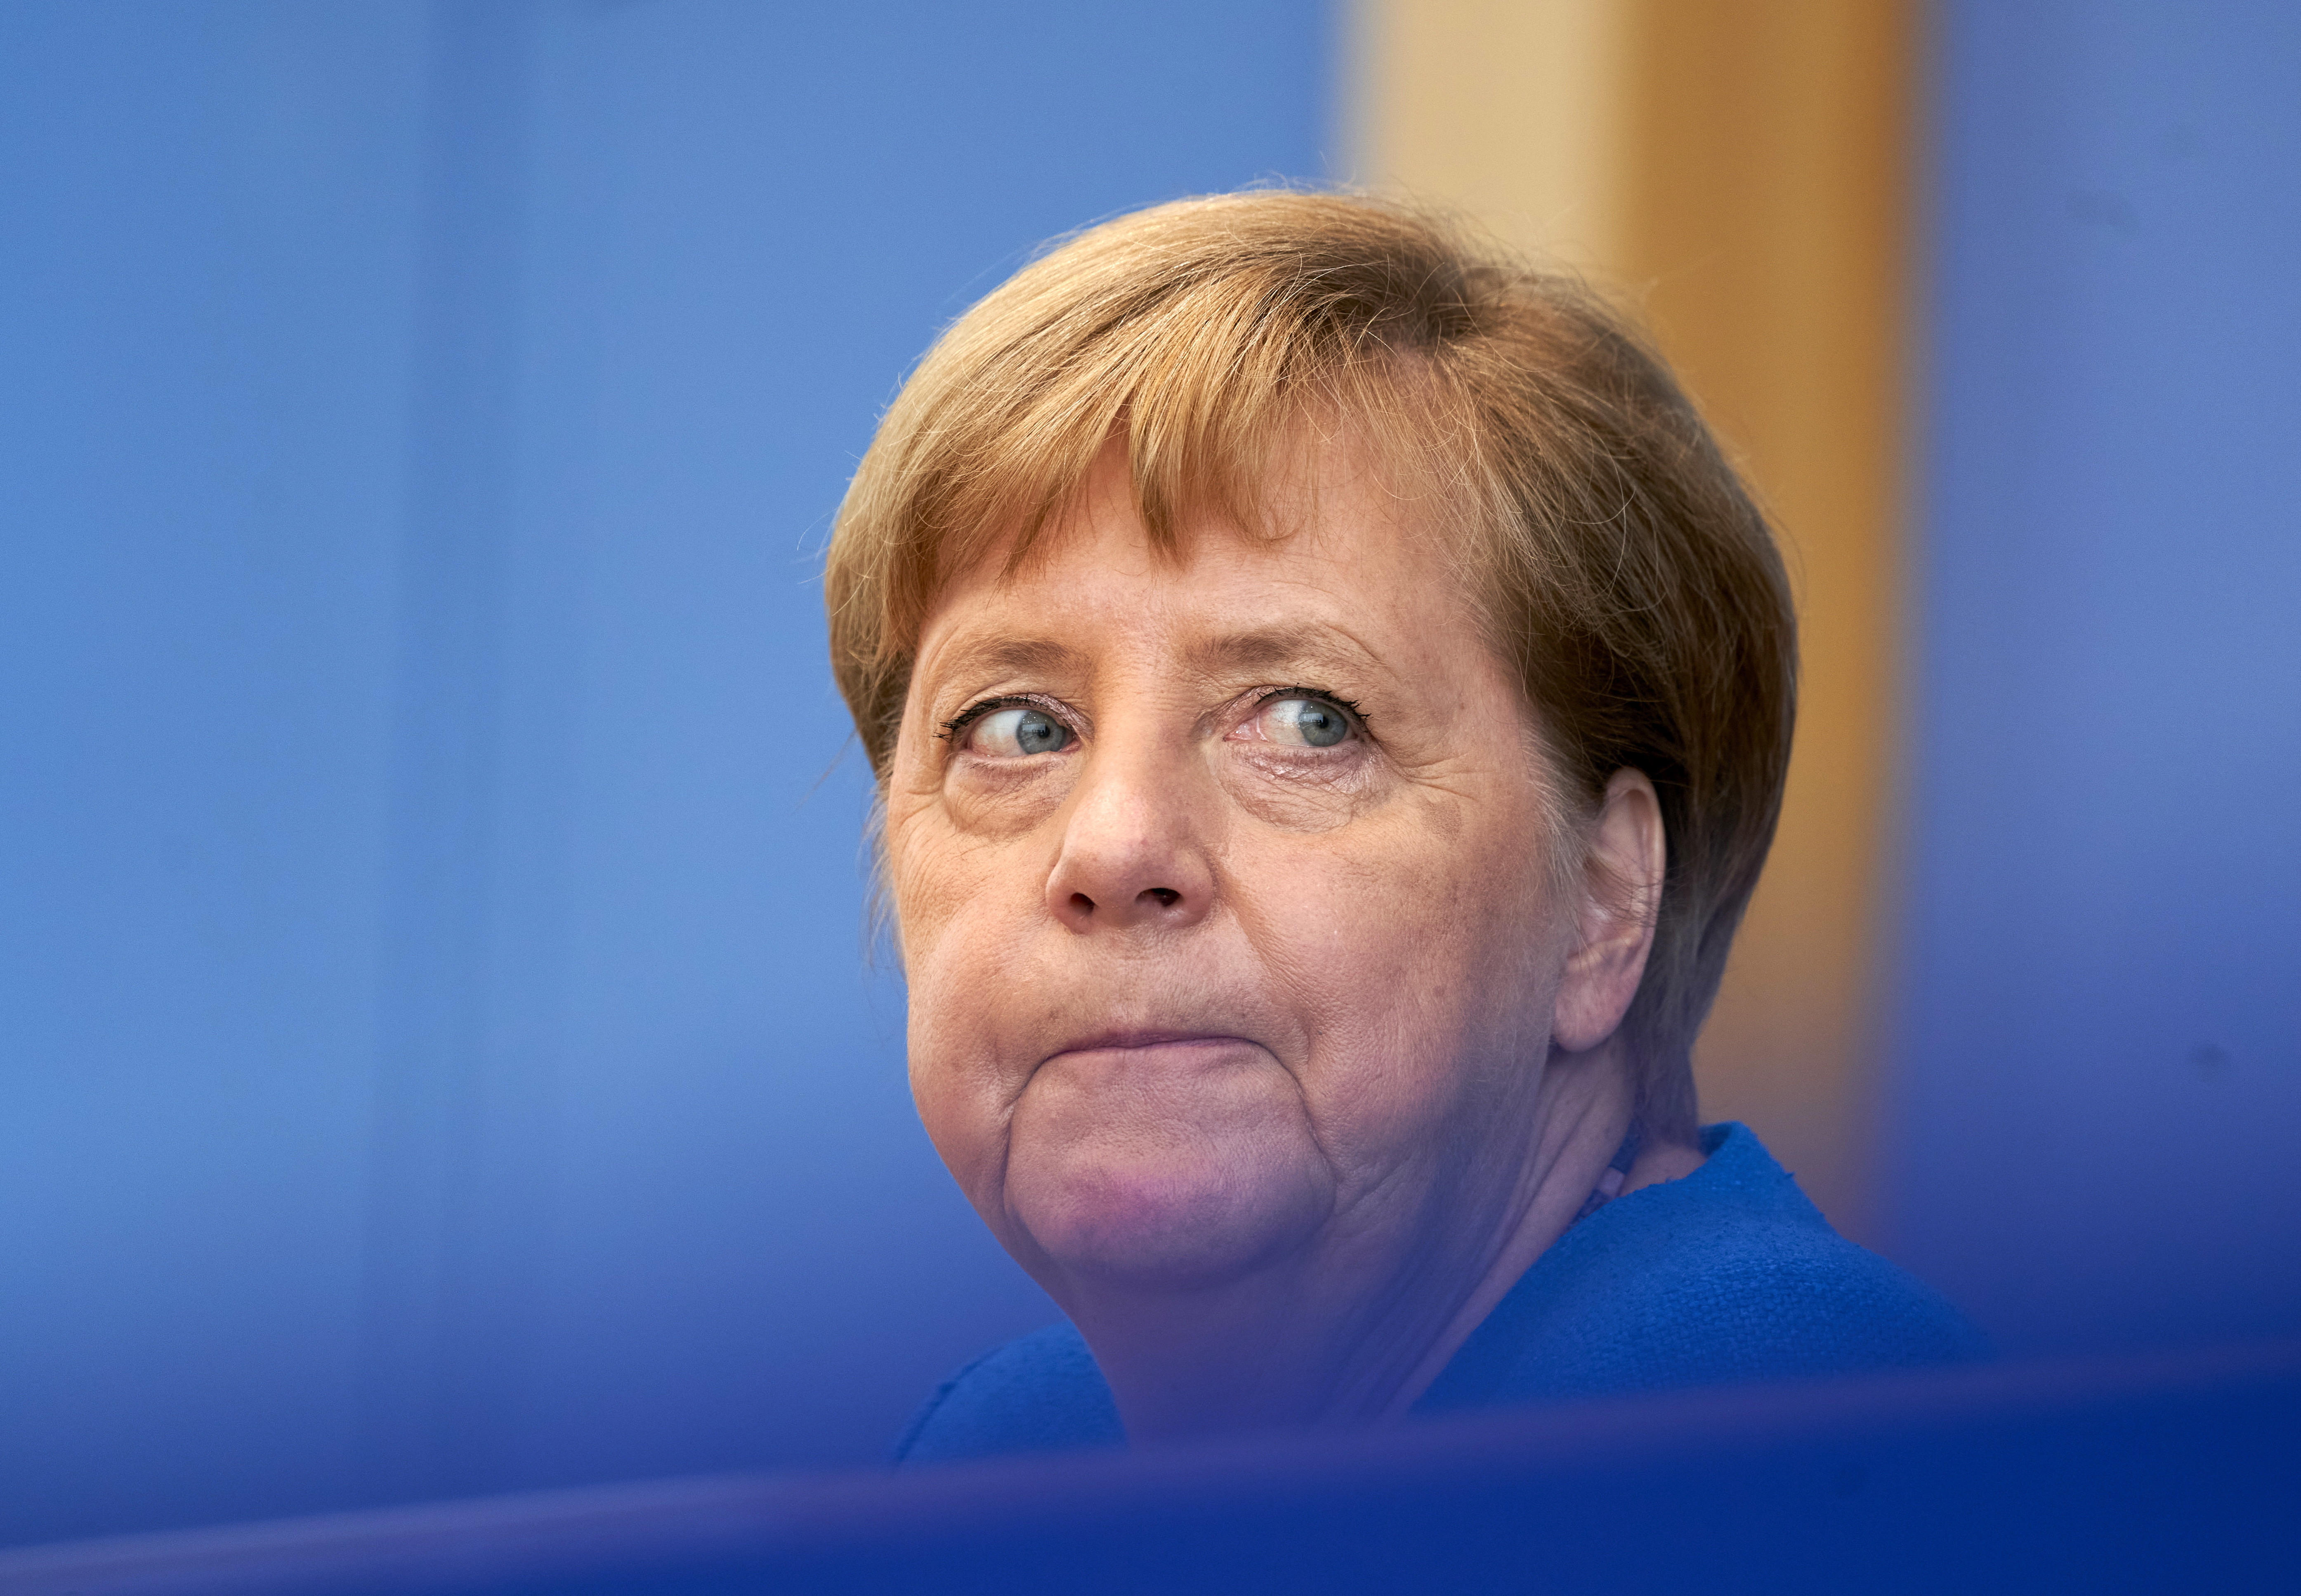 LE POINT: Germania este deja nostalgică cu privire la Angela Merkel